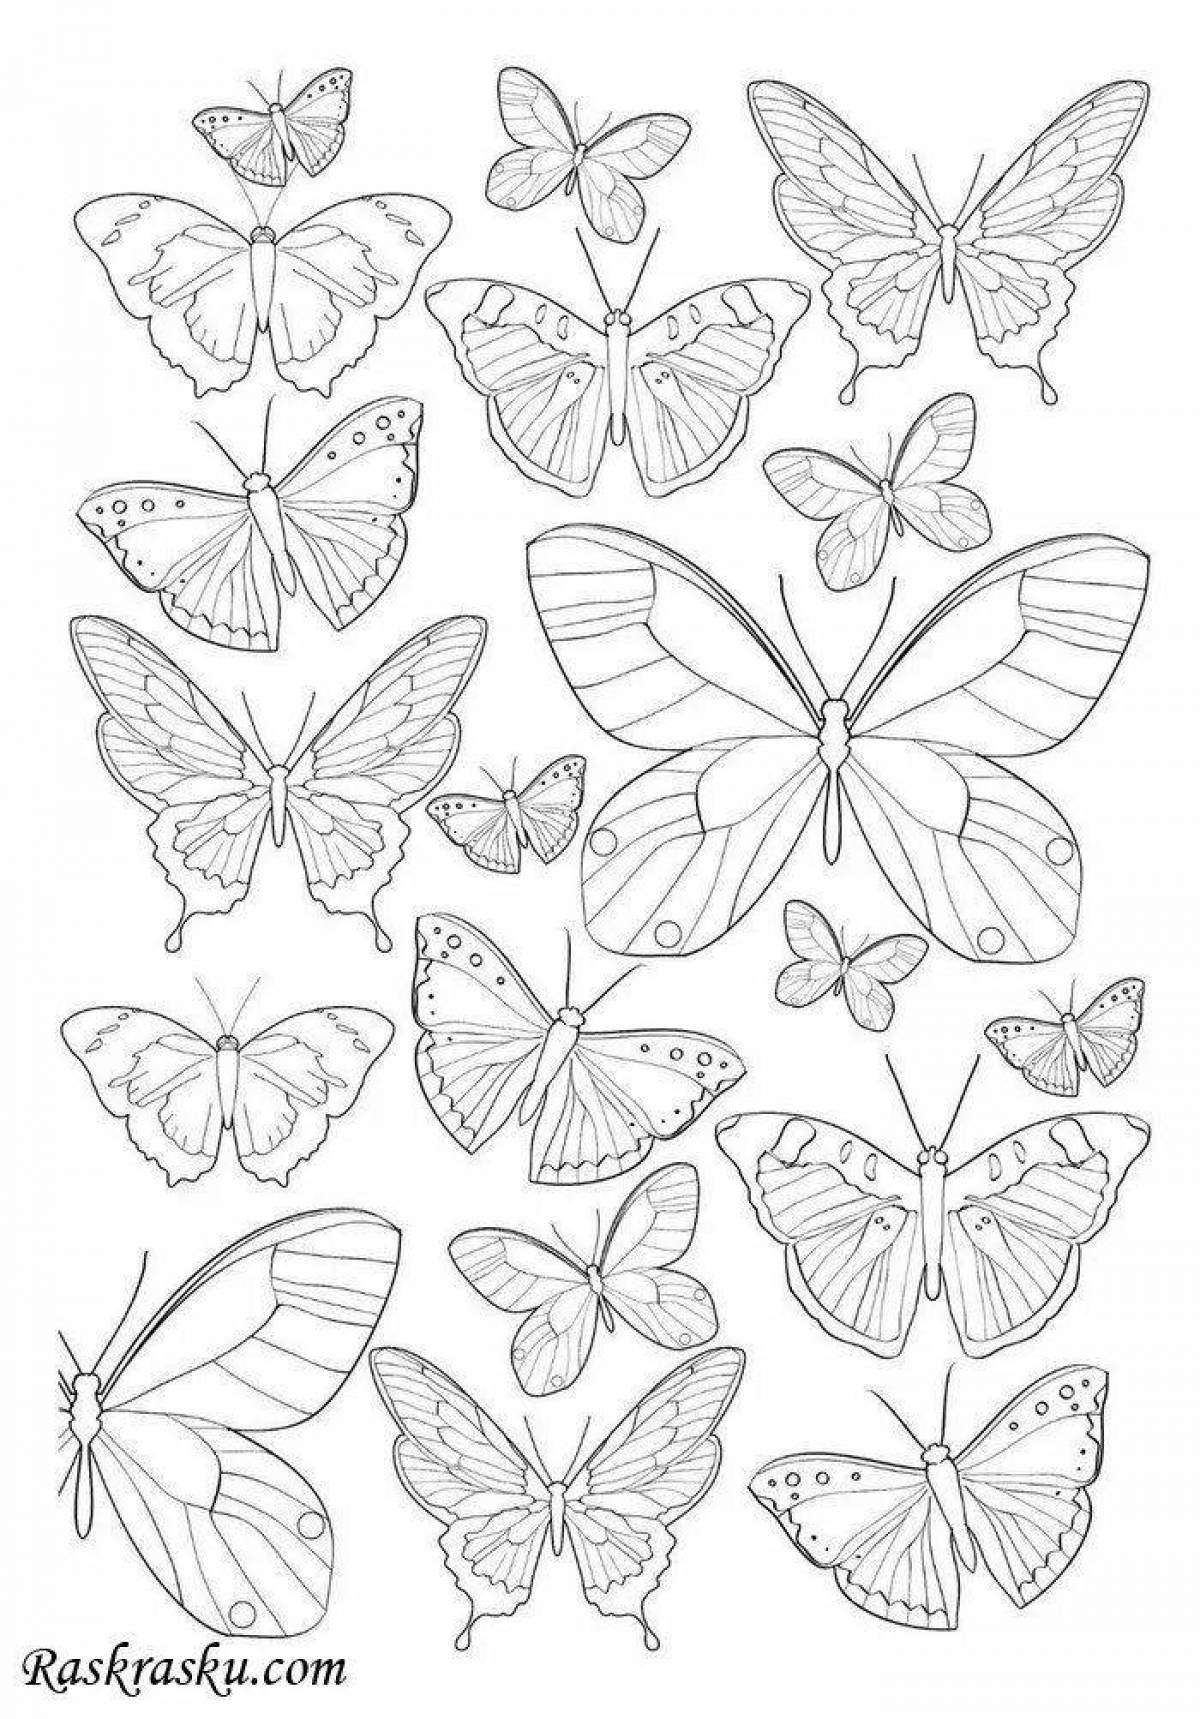 Раскраски Антистресс бабочки - распечатать в хорошем качестве бе�сплатно